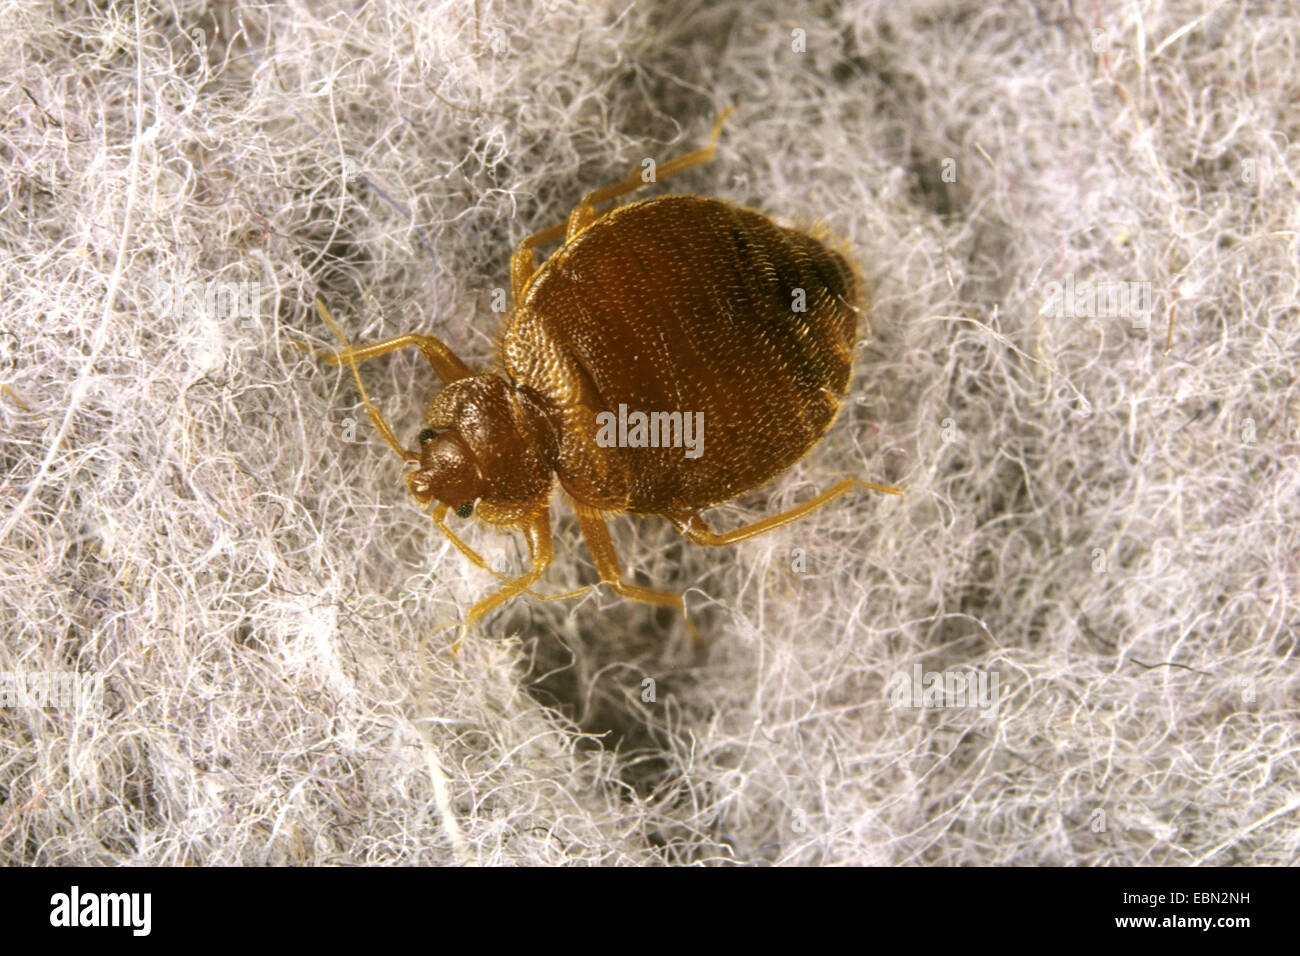 Bedbug, Common bedbug, Wall-louse (Cimex lectularius), on hairy ground Stock Photo